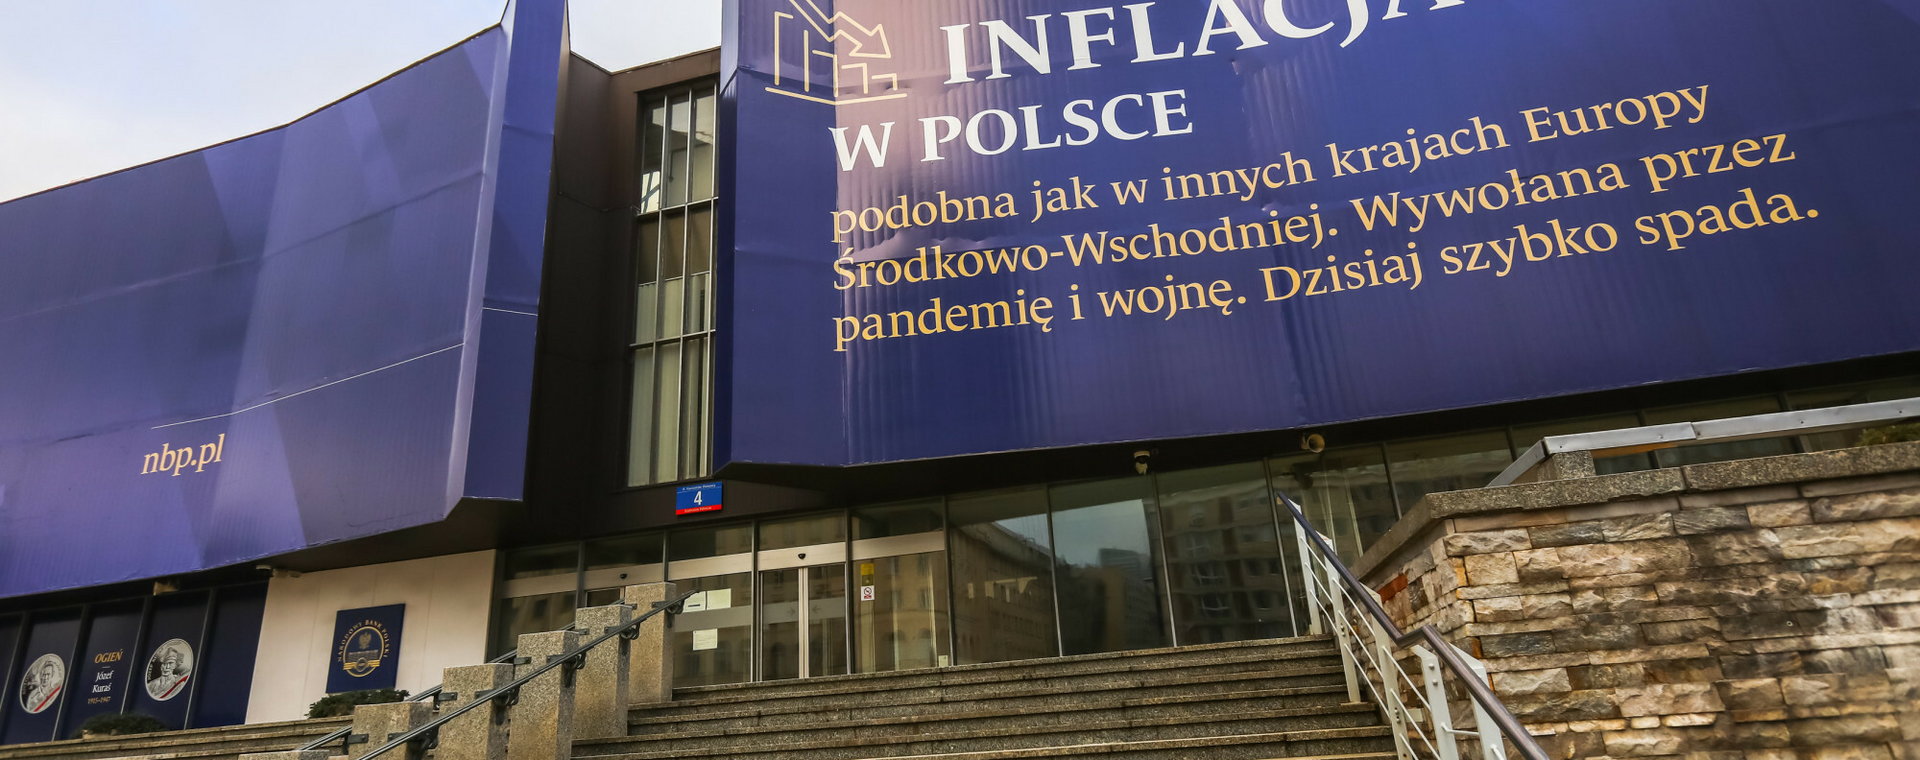 Baner propagandowy o spadku inflacji na siedzibie Narodowego Banku Polskiego